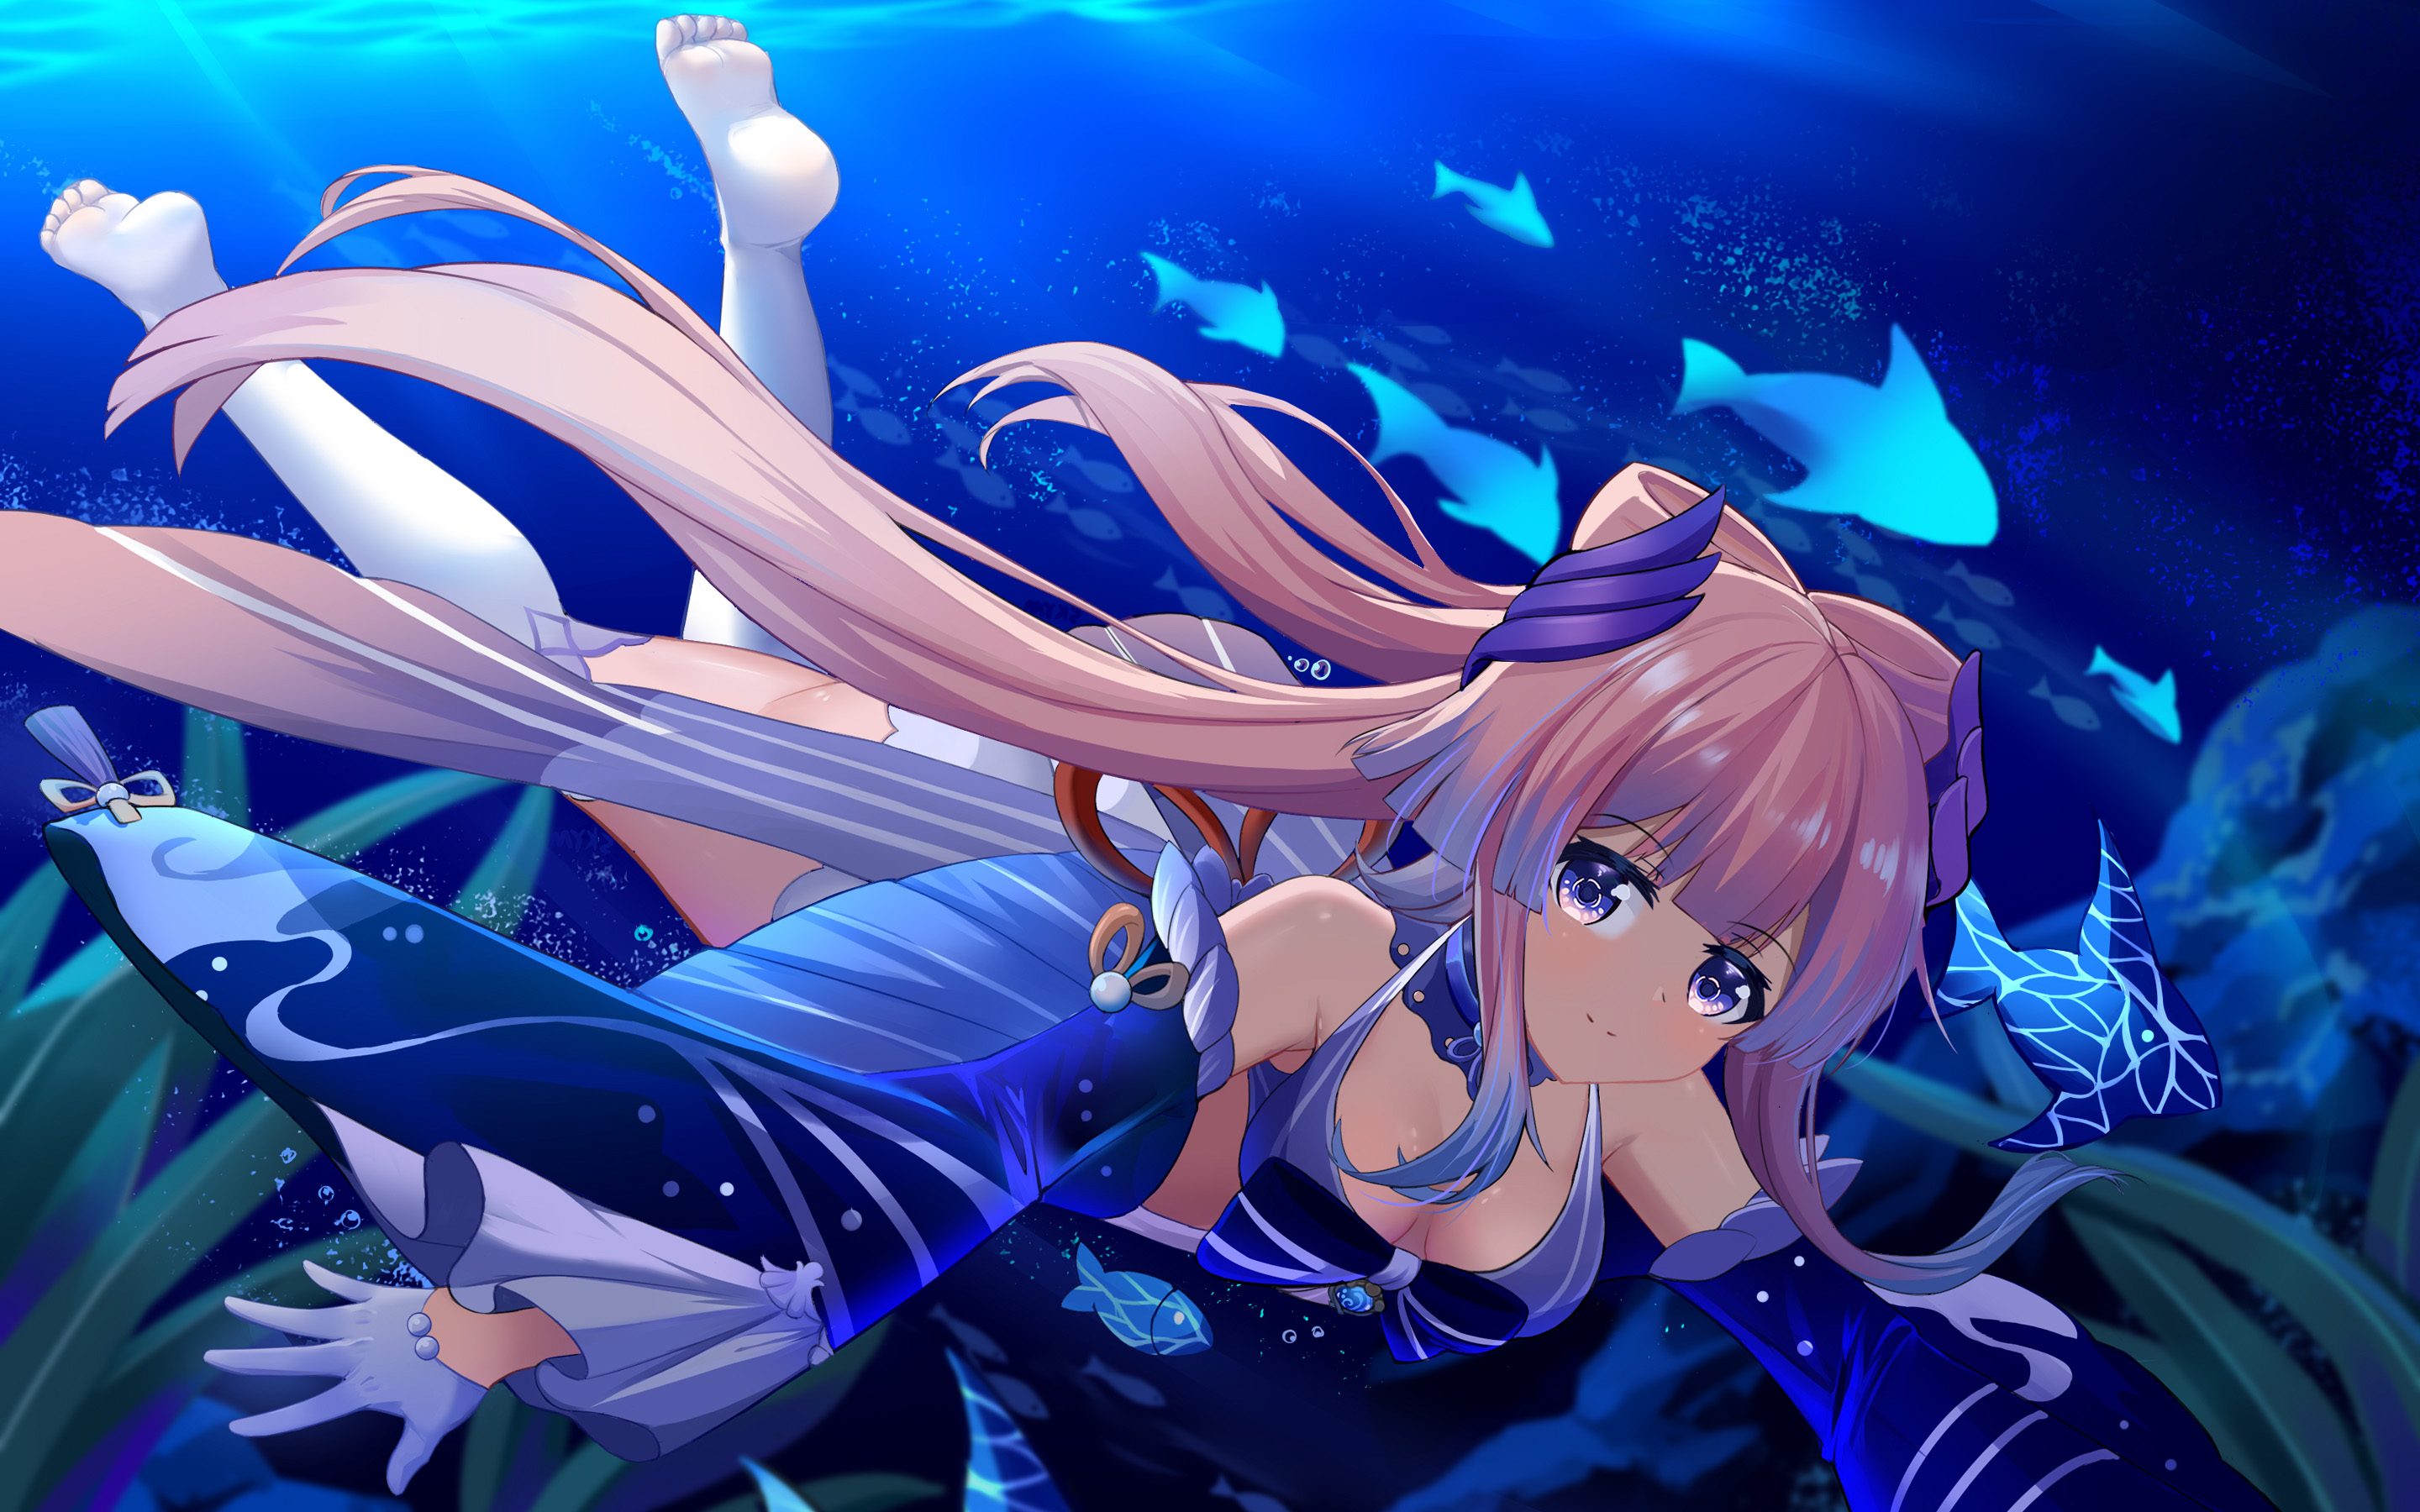 Download Wallpapers Sangonomiya Kokomi Underwater World Hydro Characters Genshin Impact